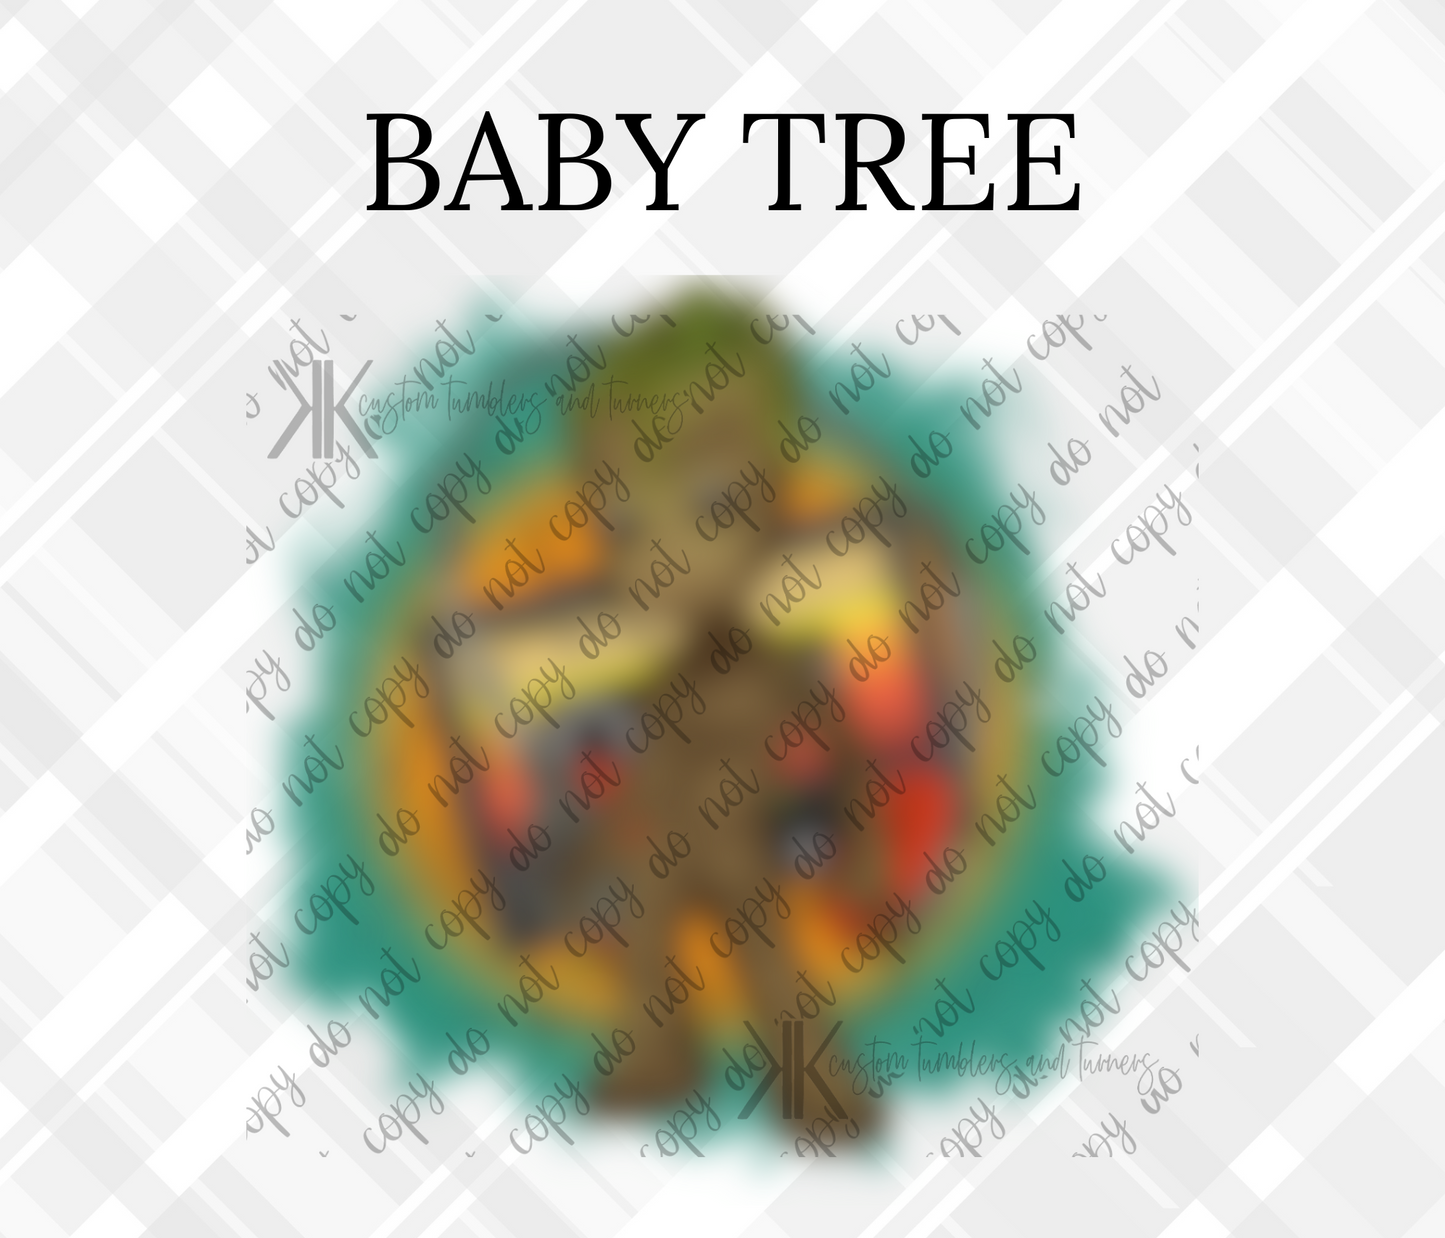 BABY TREE